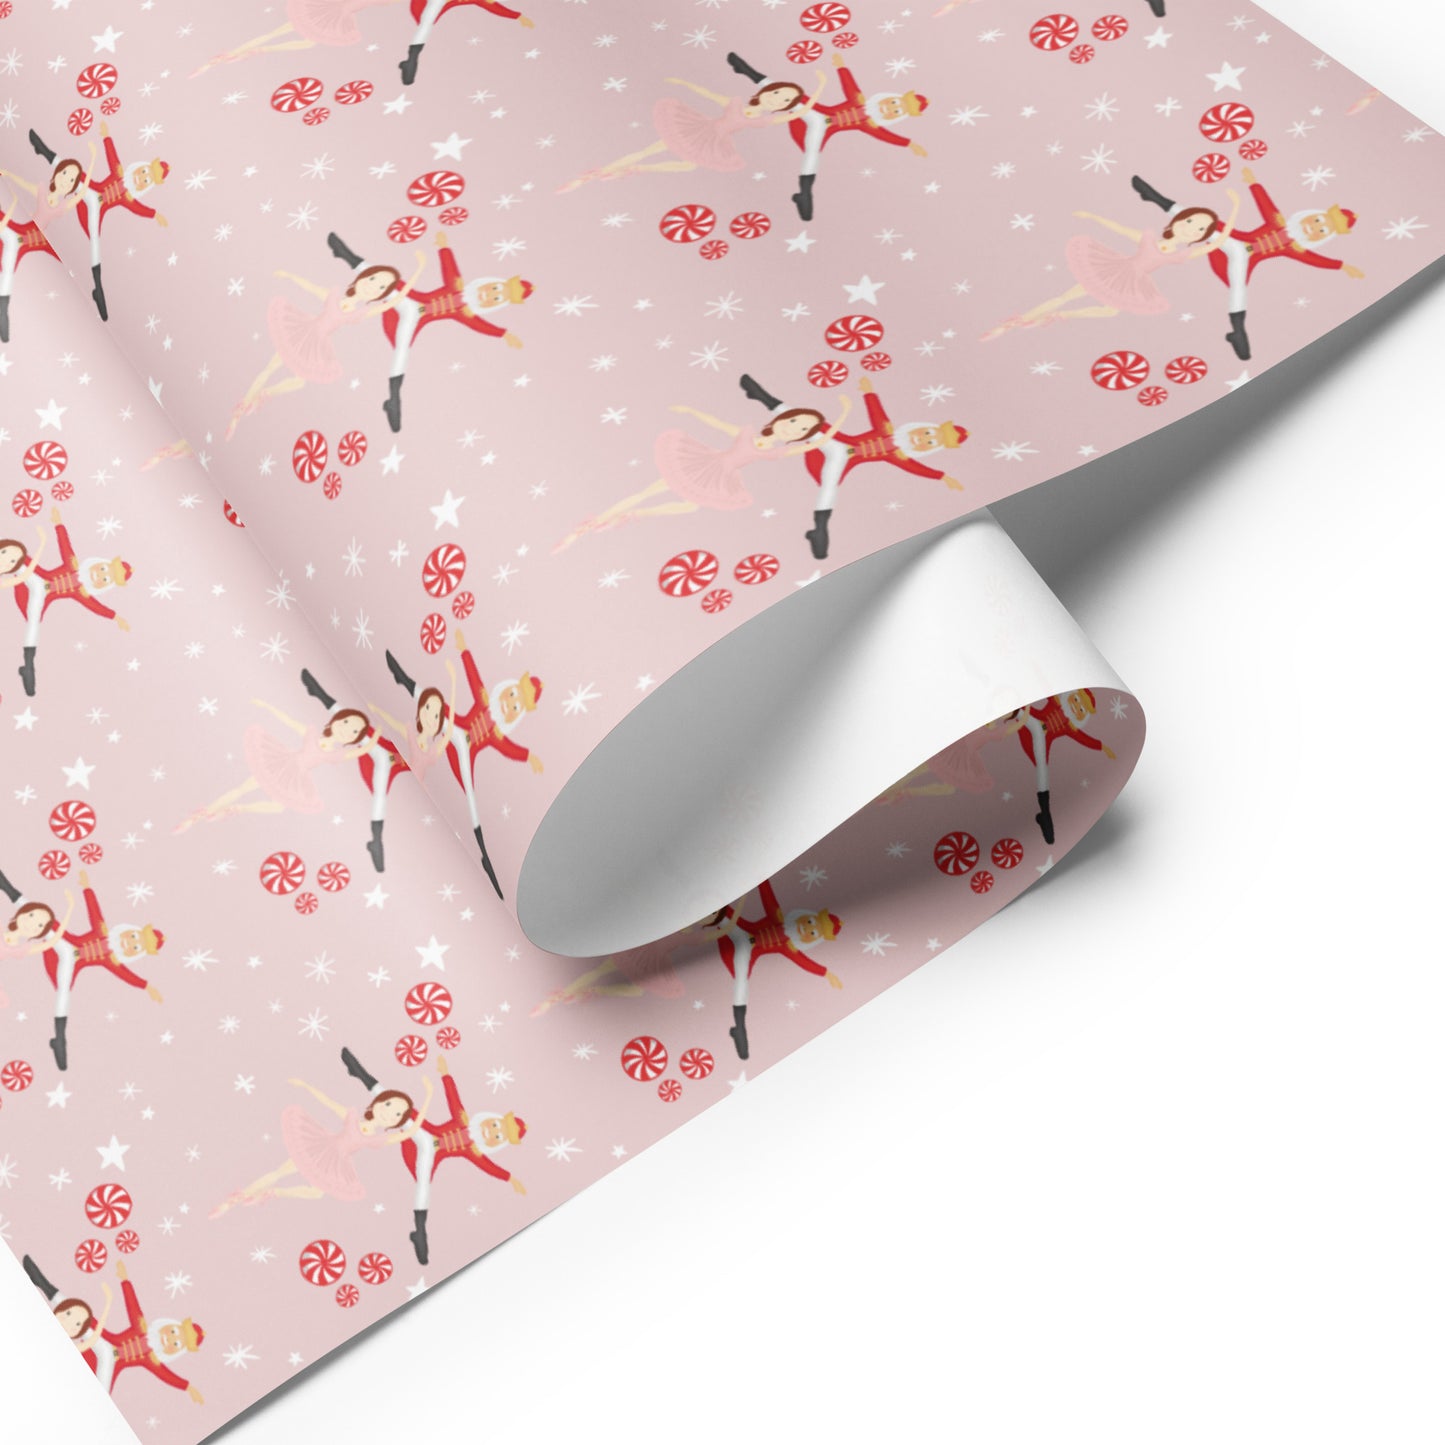 Ballerina & Nutcracker Wrapping Paper Sheets